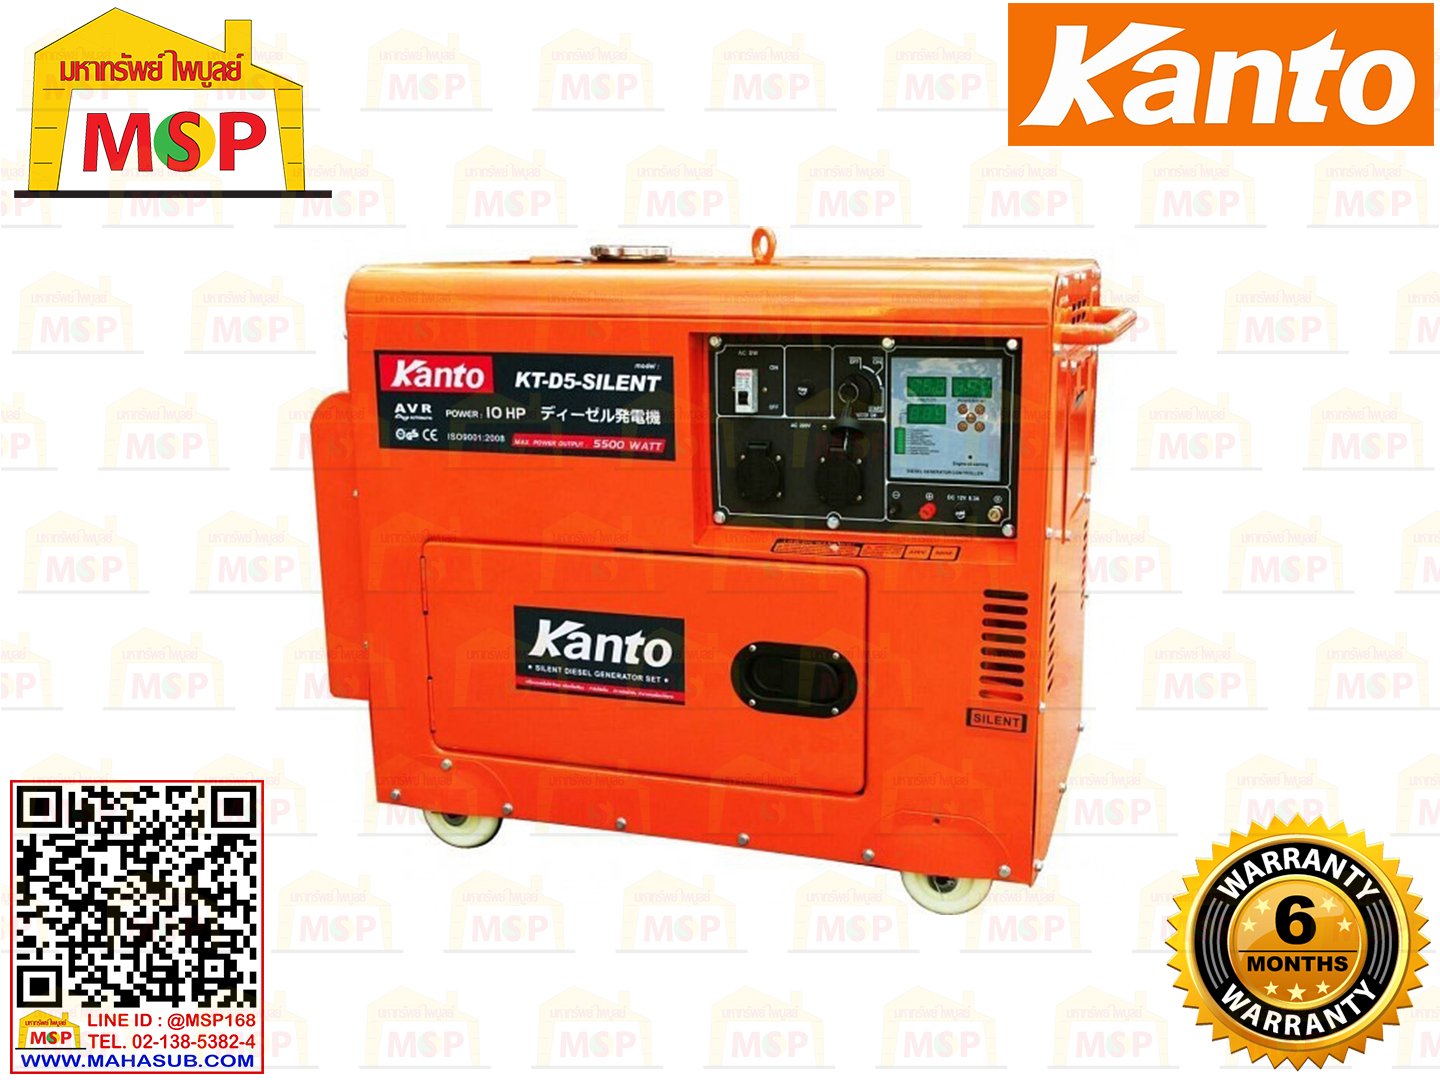 Kanto เครื่องปั่นไฟใช้ดีเซล KT-D5-SILENT 5 KW 220V กุญแจ #NV